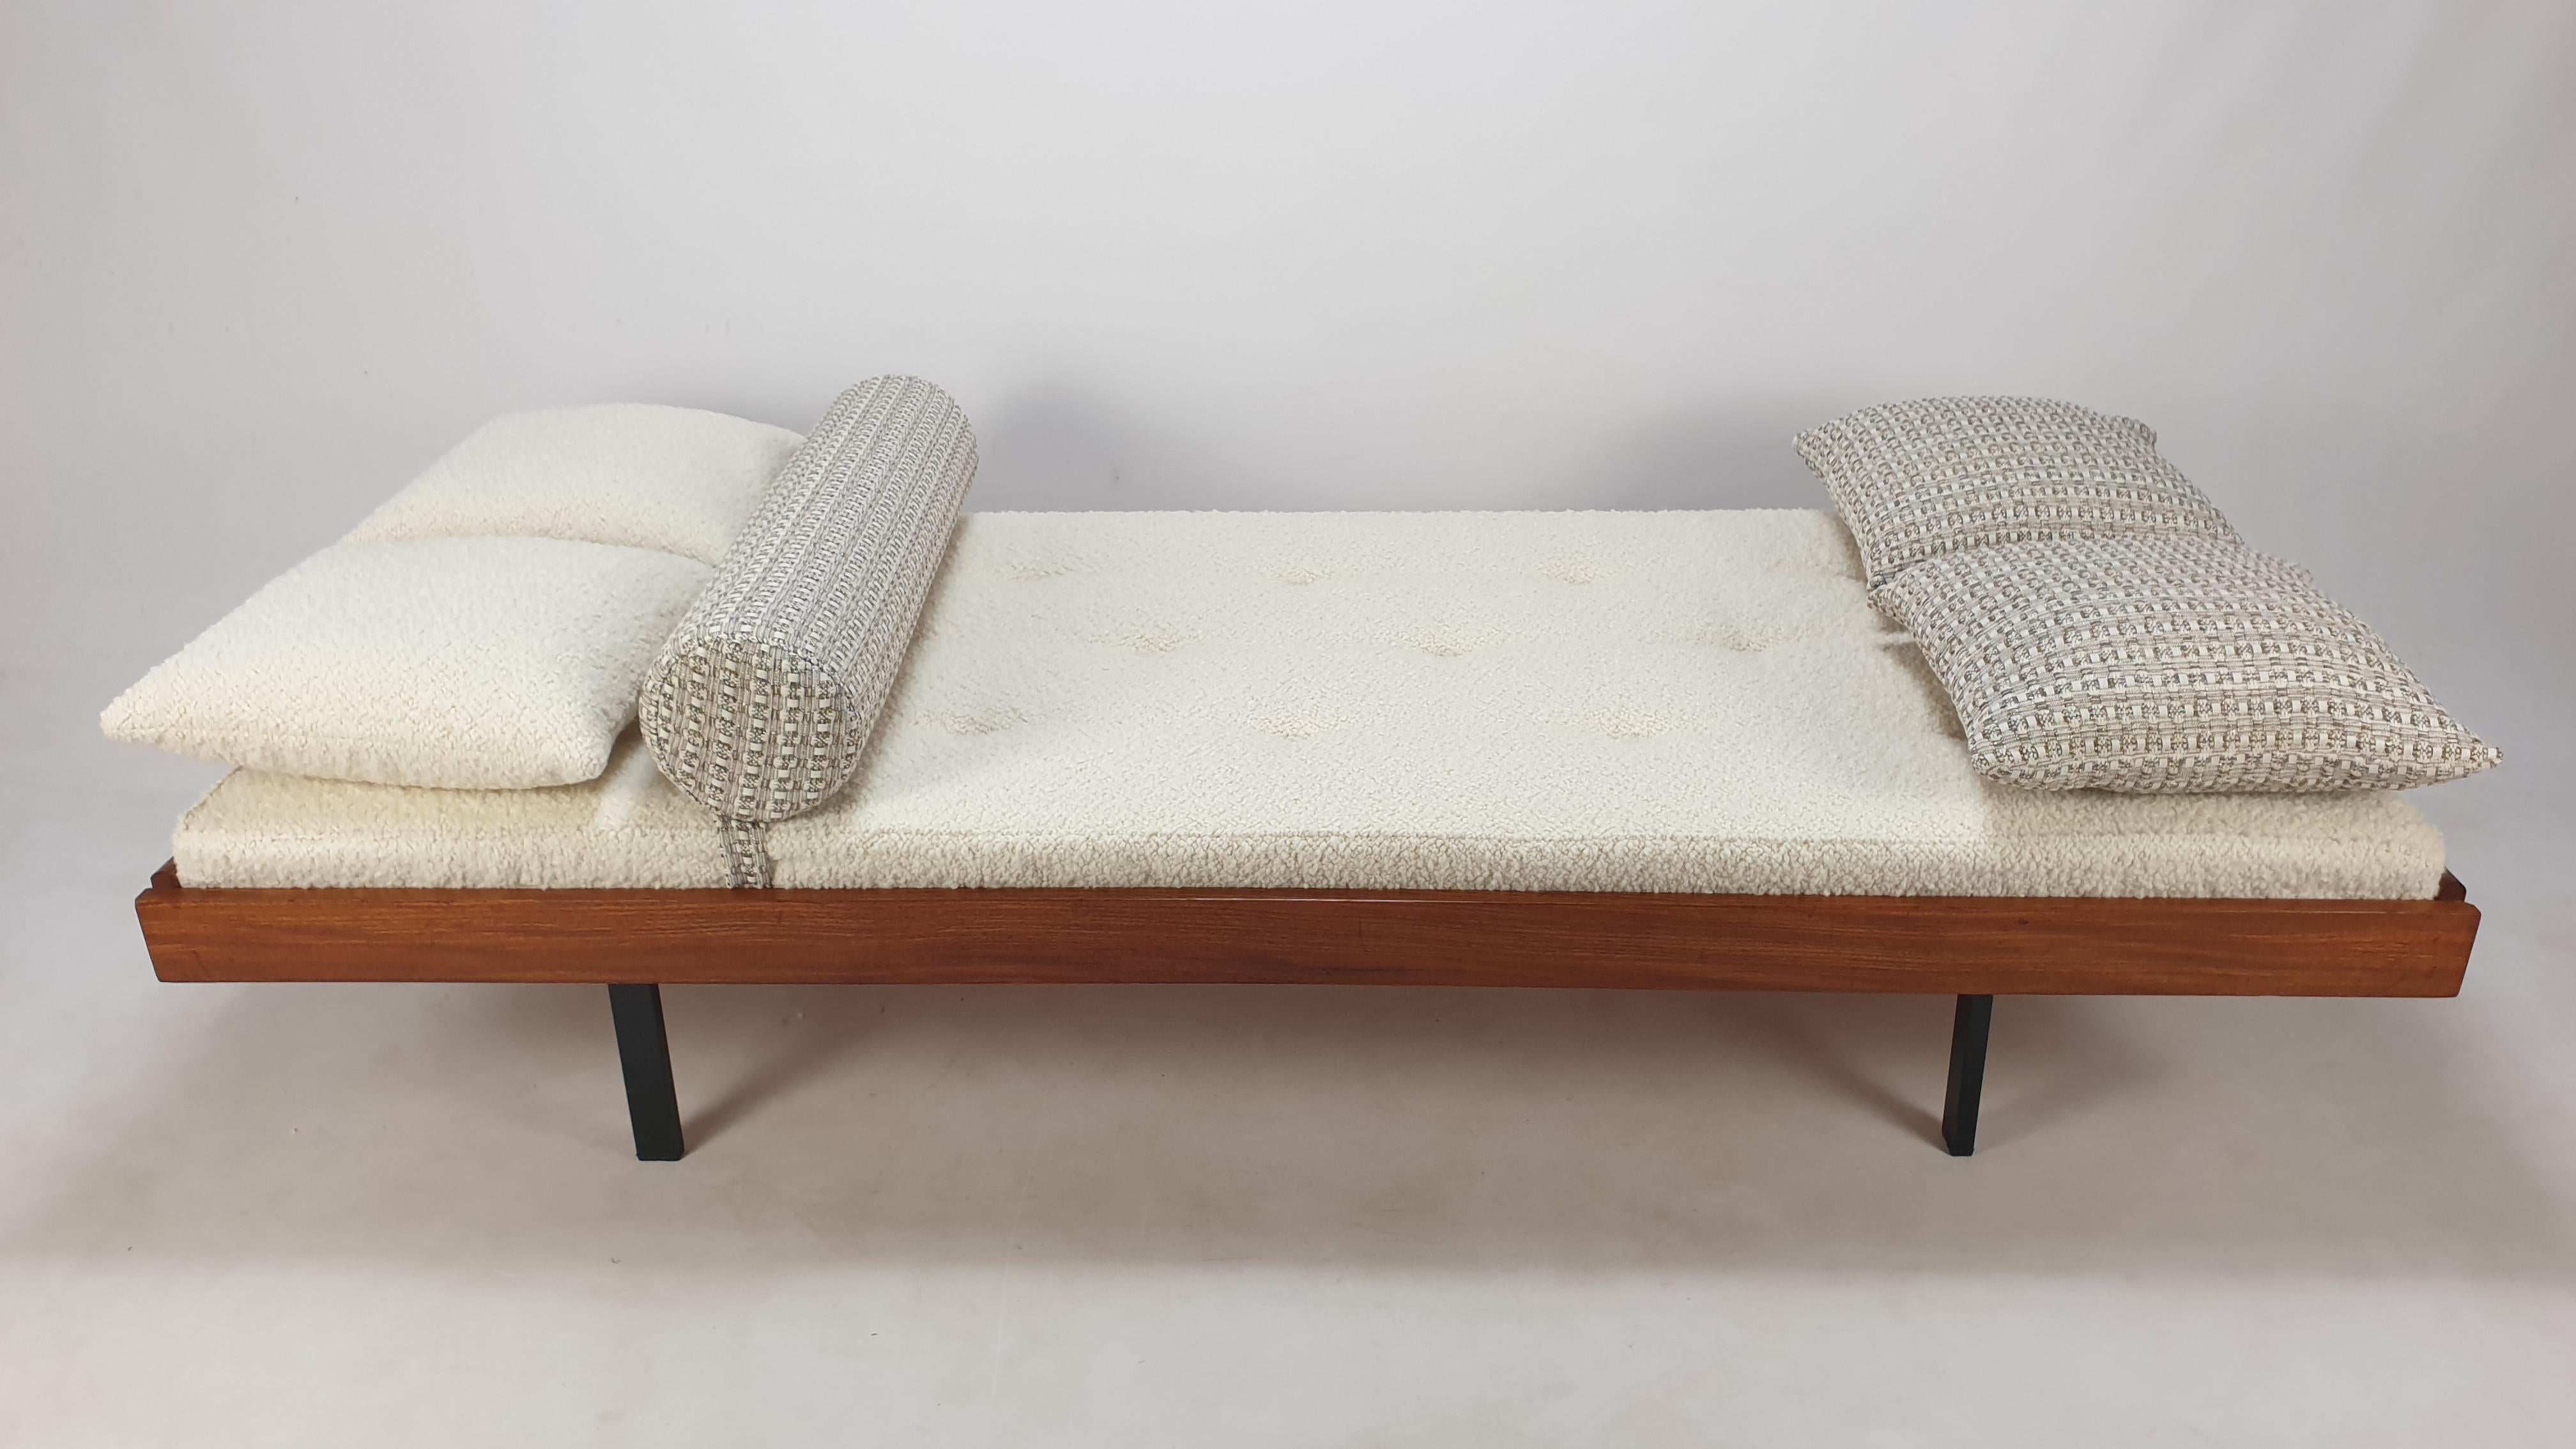 Très beau lit de jour en teck, fabriqué aux Pays-Bas dans les années 60. 
Il possède 4 pieds pliants, voir les dernières photos.

Le matelas est renouvelé avec de la mousse neuve et il vient d'être tapissé avec un joli tissu italien en laine